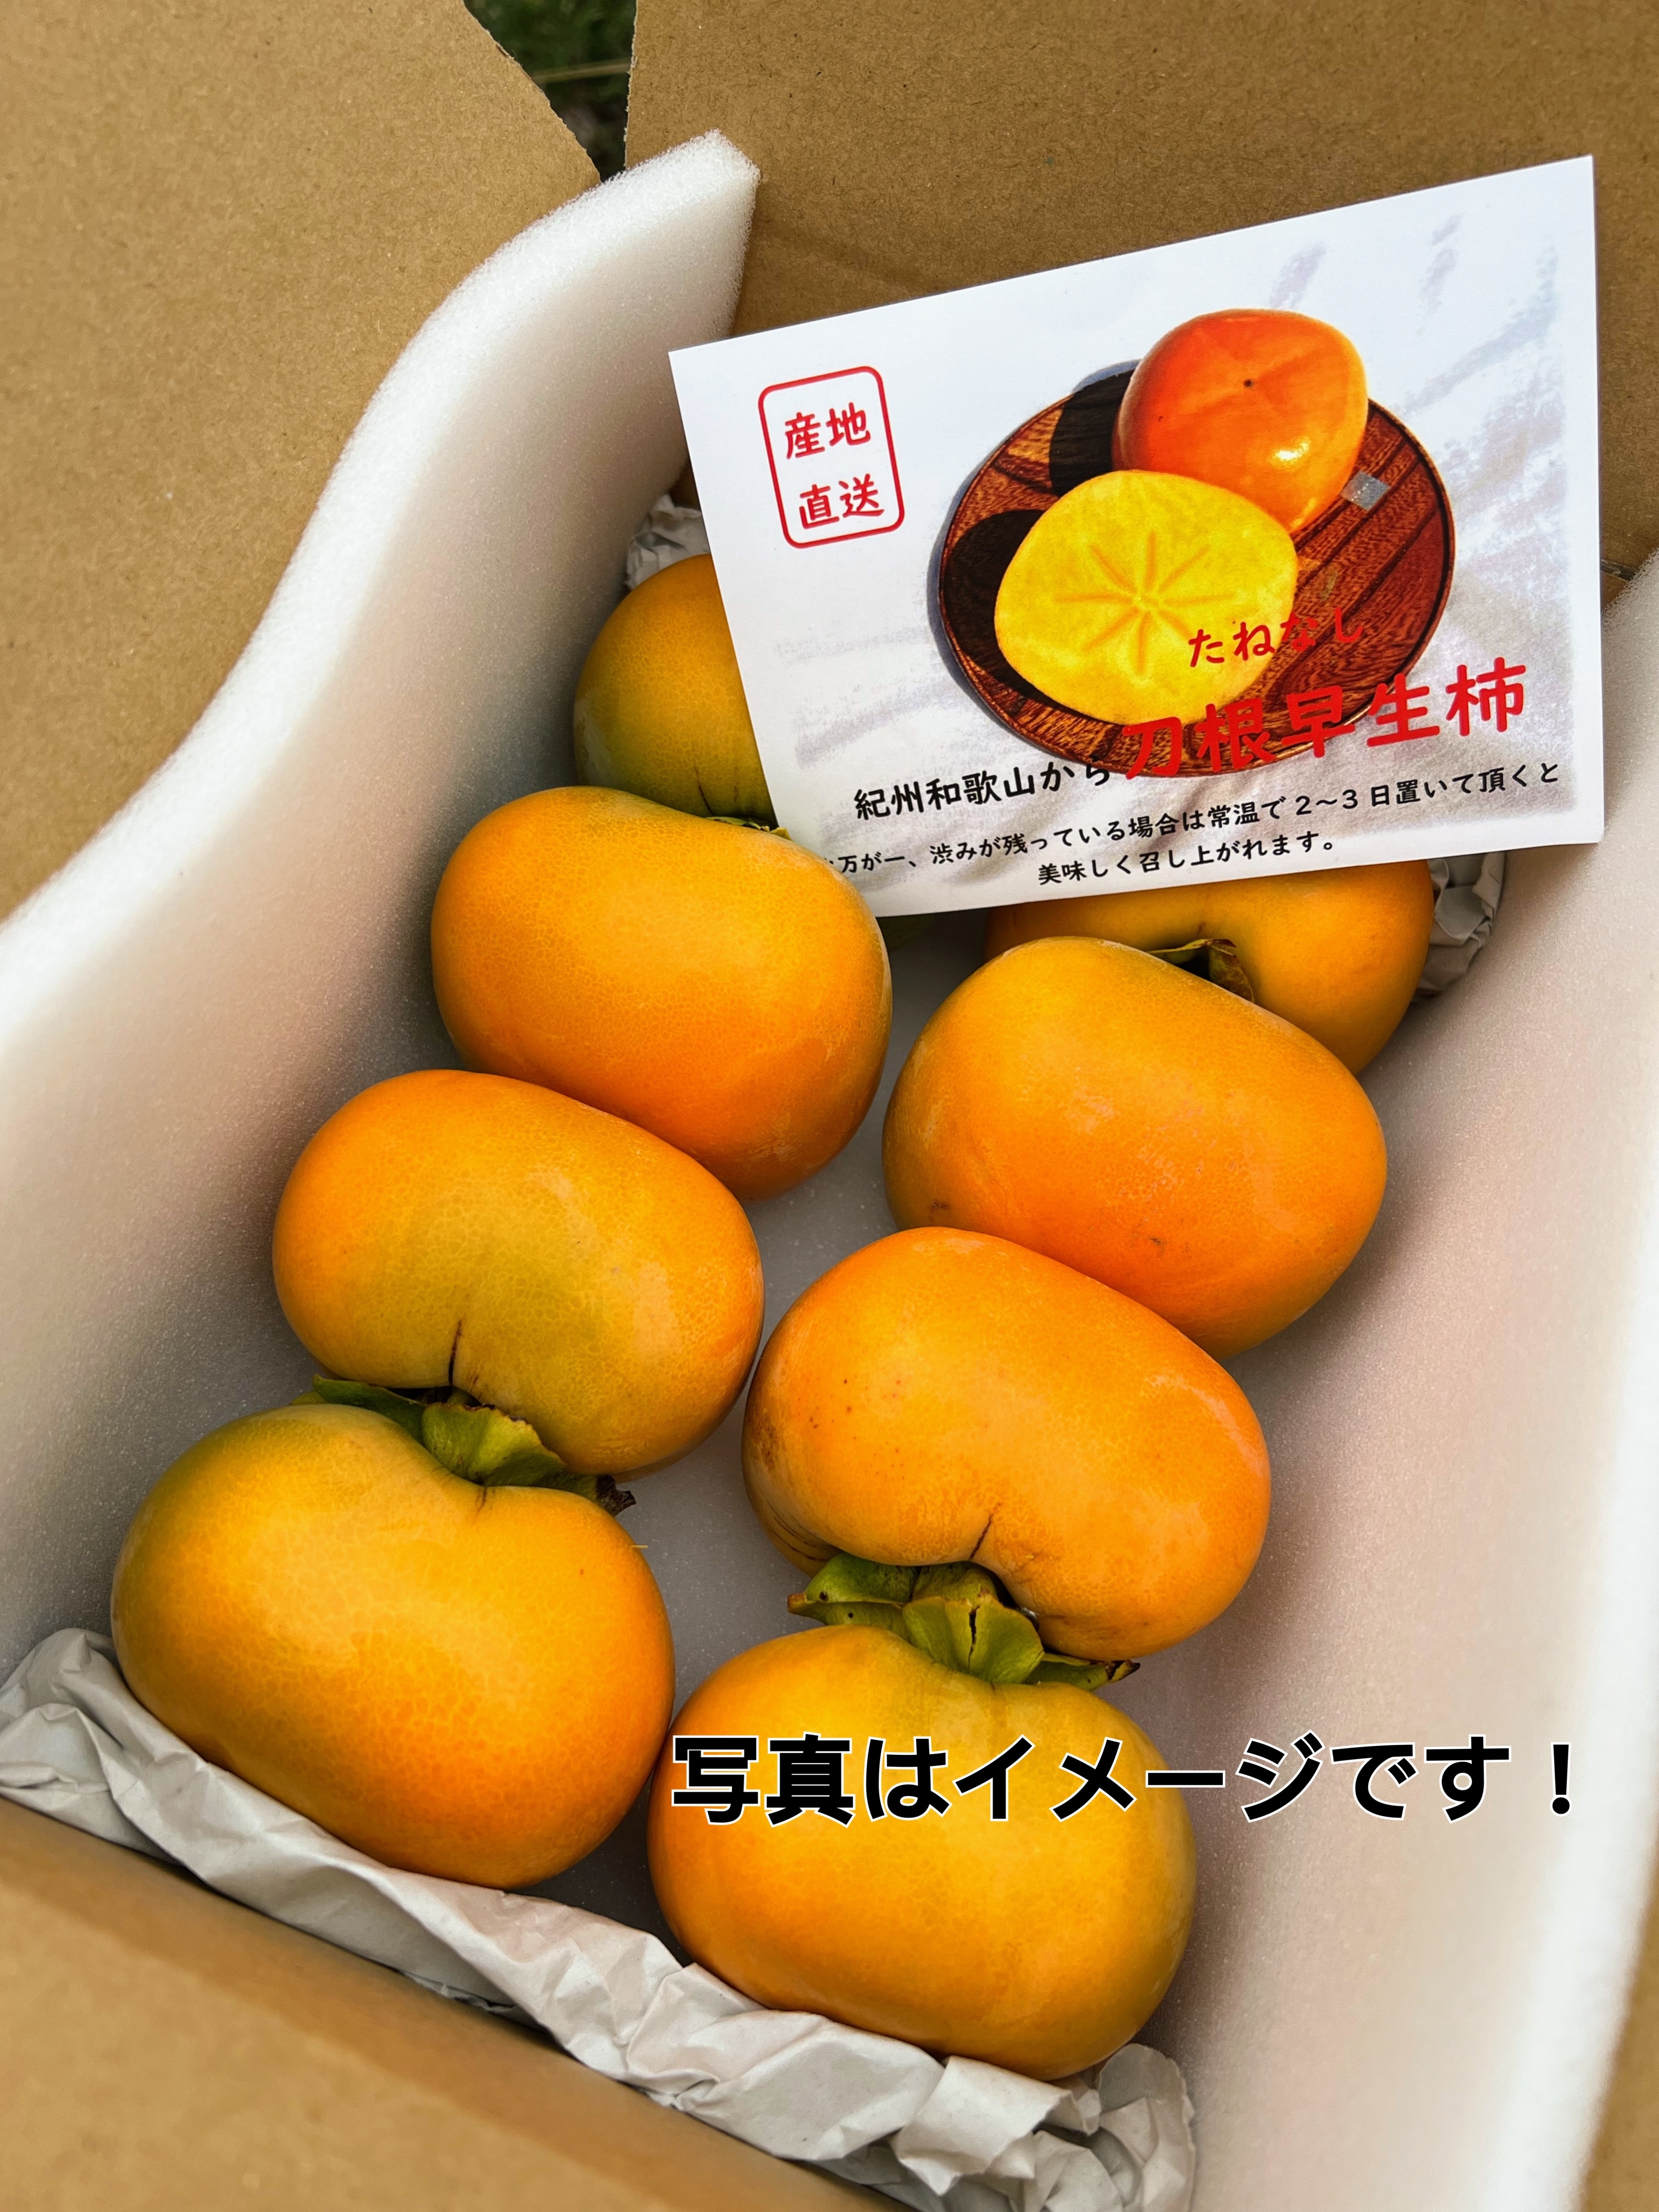 3感謝☆柿祭♪和歌山県産たねなし柿(刀根早生)5kg箱